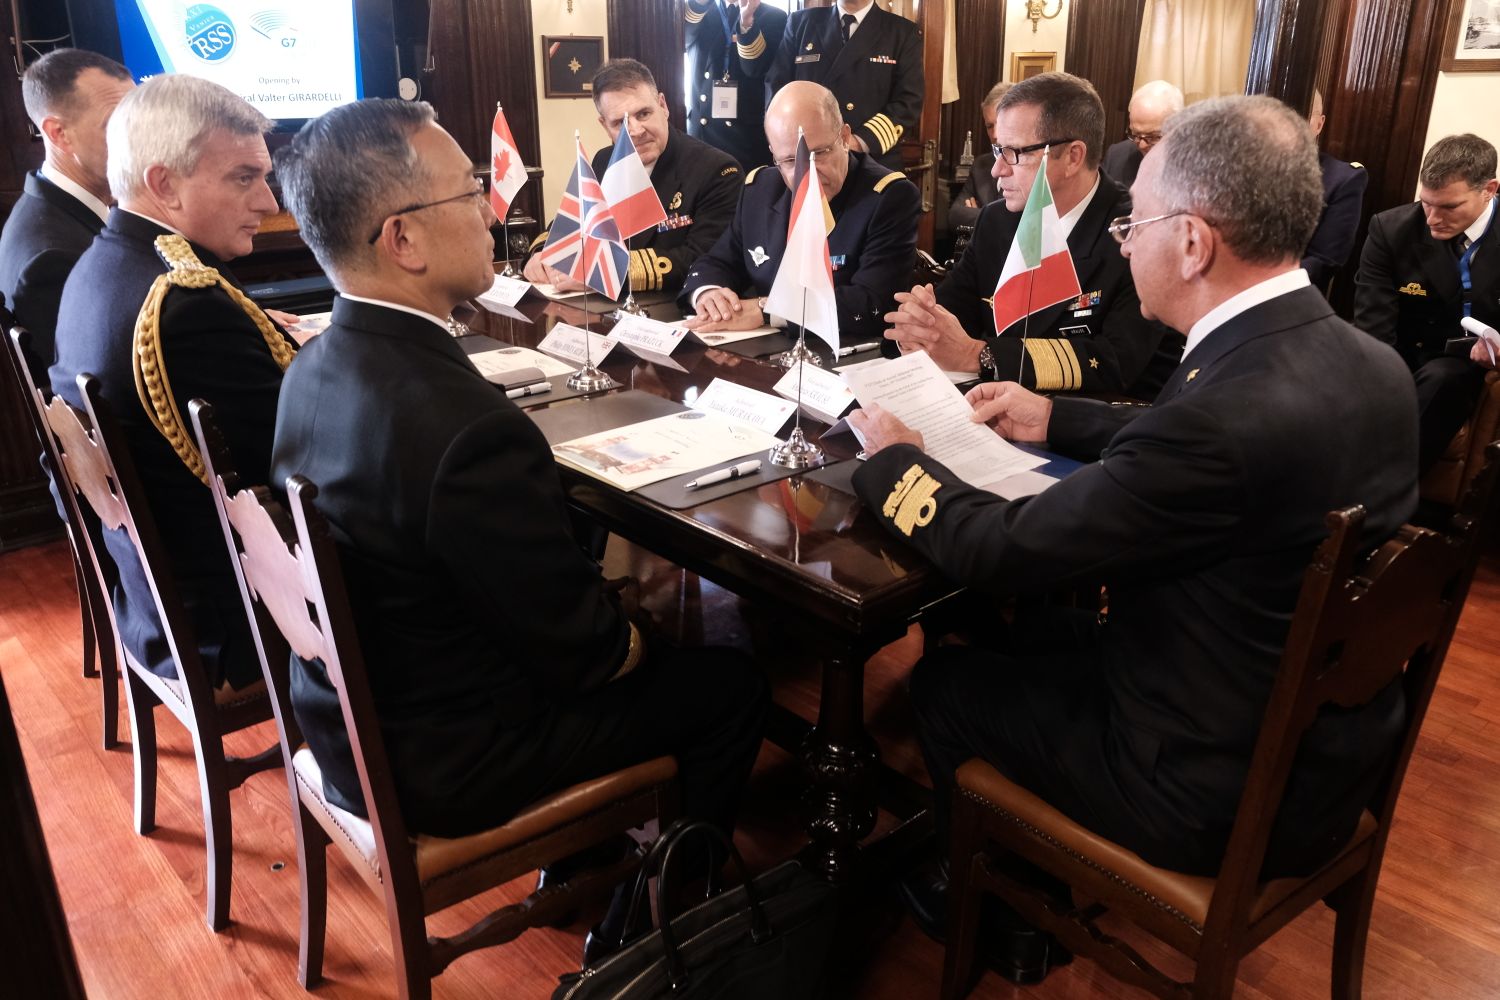  A Bordo dell’Amerigo Vespucci riunione dei Capi di Stato Maggiore delle Marine Militari del G7